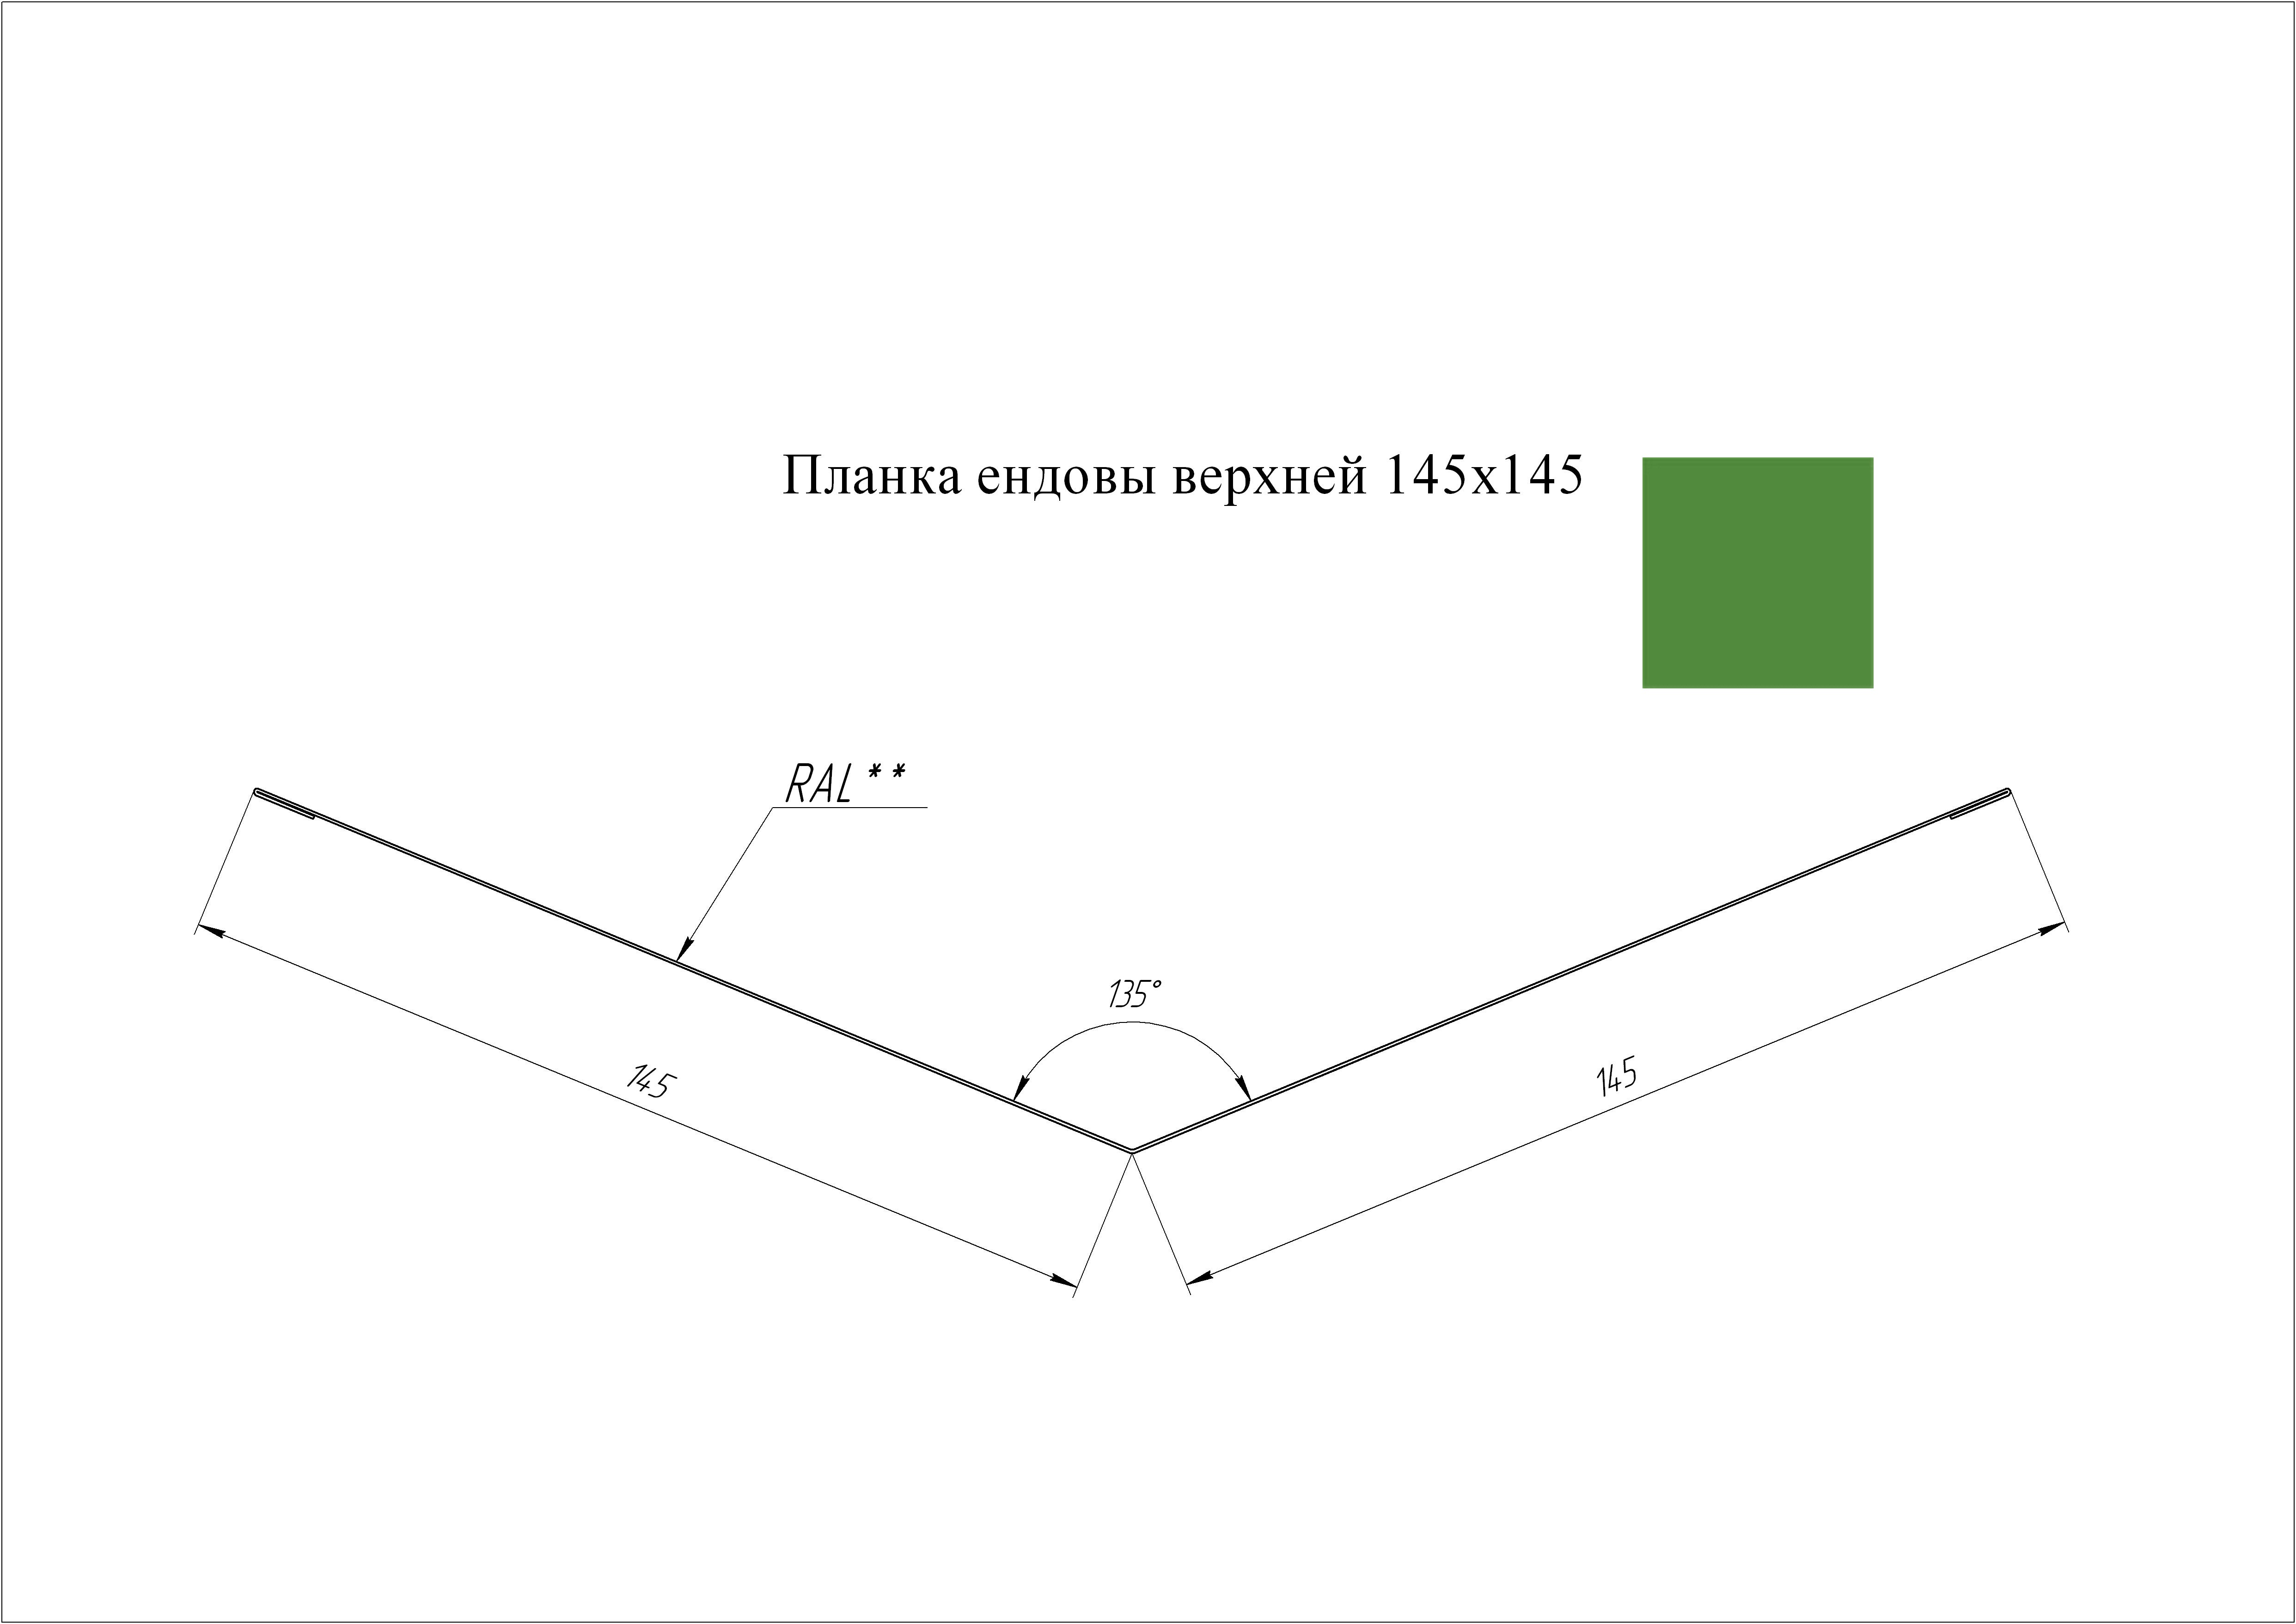 Ендова верхняя 145*145 мм L=3 м GL PE-полиэстер 0,45 RAL 6002 - зеленый лист